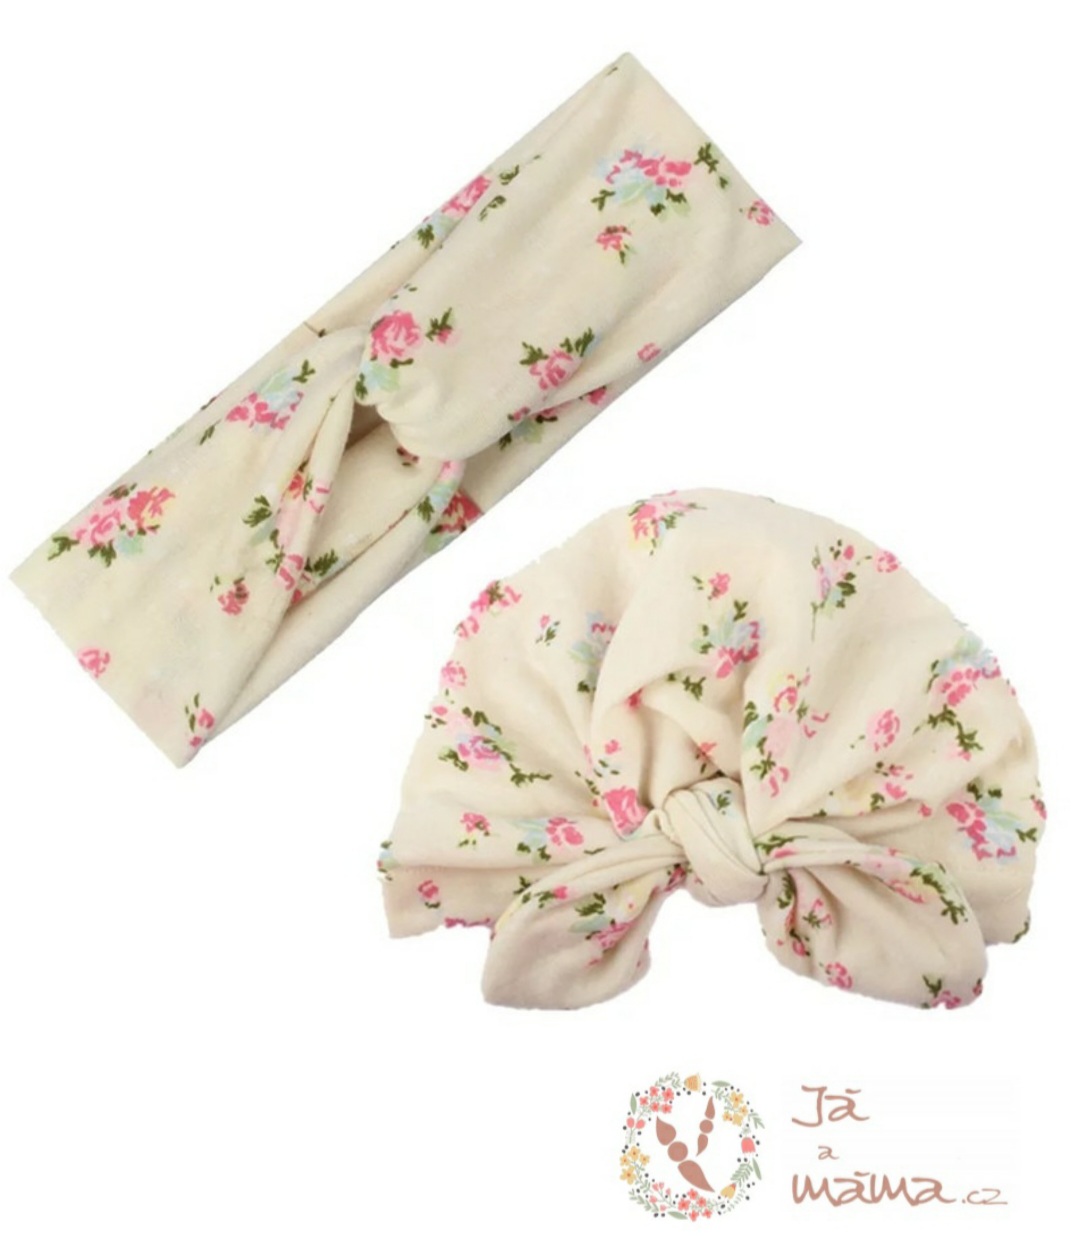 NOVINKA - Originální set šátků Já a máma  - čepička a šátek, světlý (elastický), pro maminku a dítě